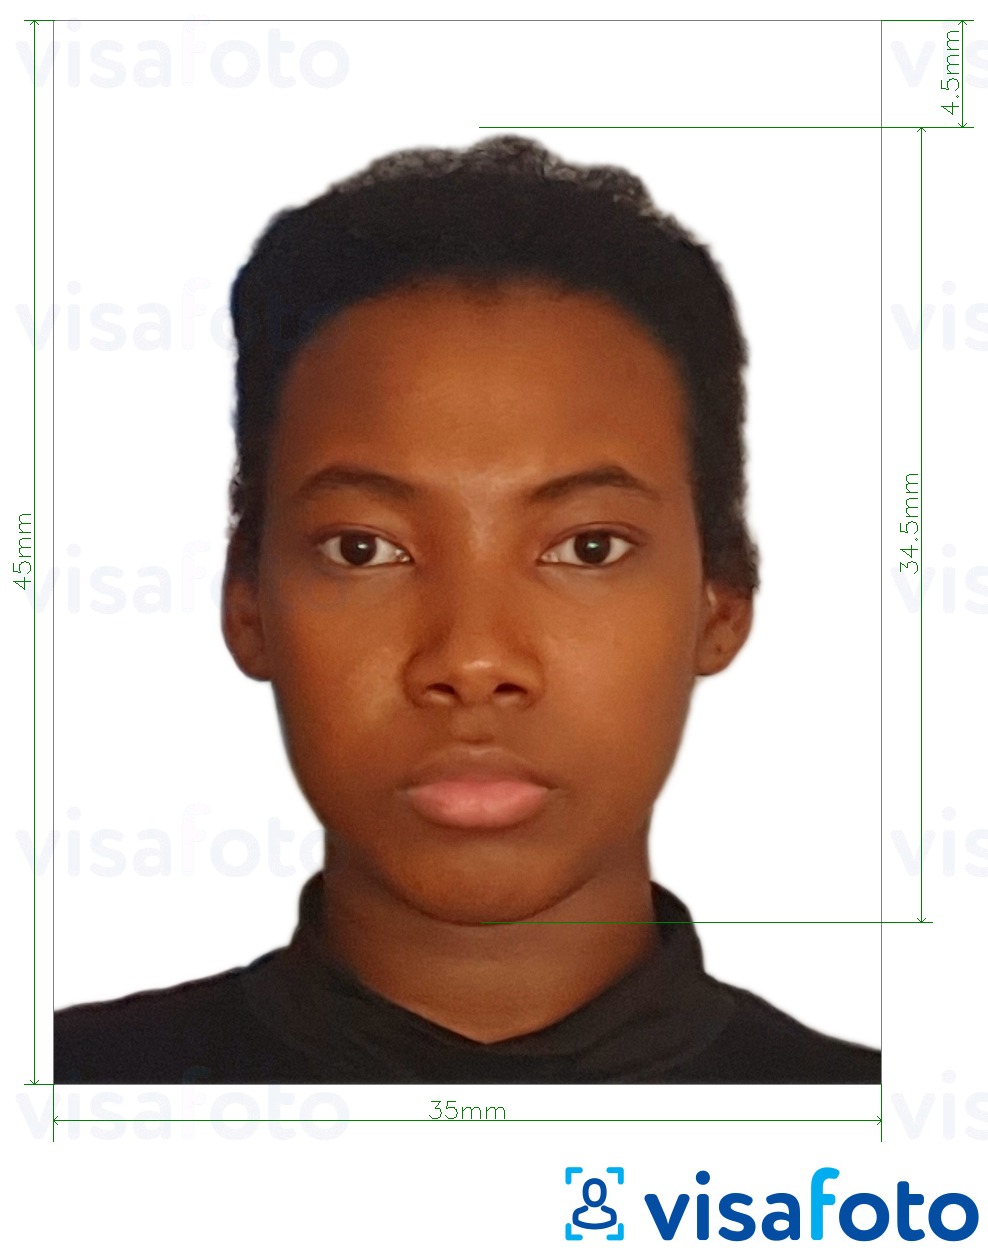 ფოტოს მაგალითი კენიის პასპორტი 35x45 მმ -სთვის ზუსტი ზომის სპეციფიკაციით